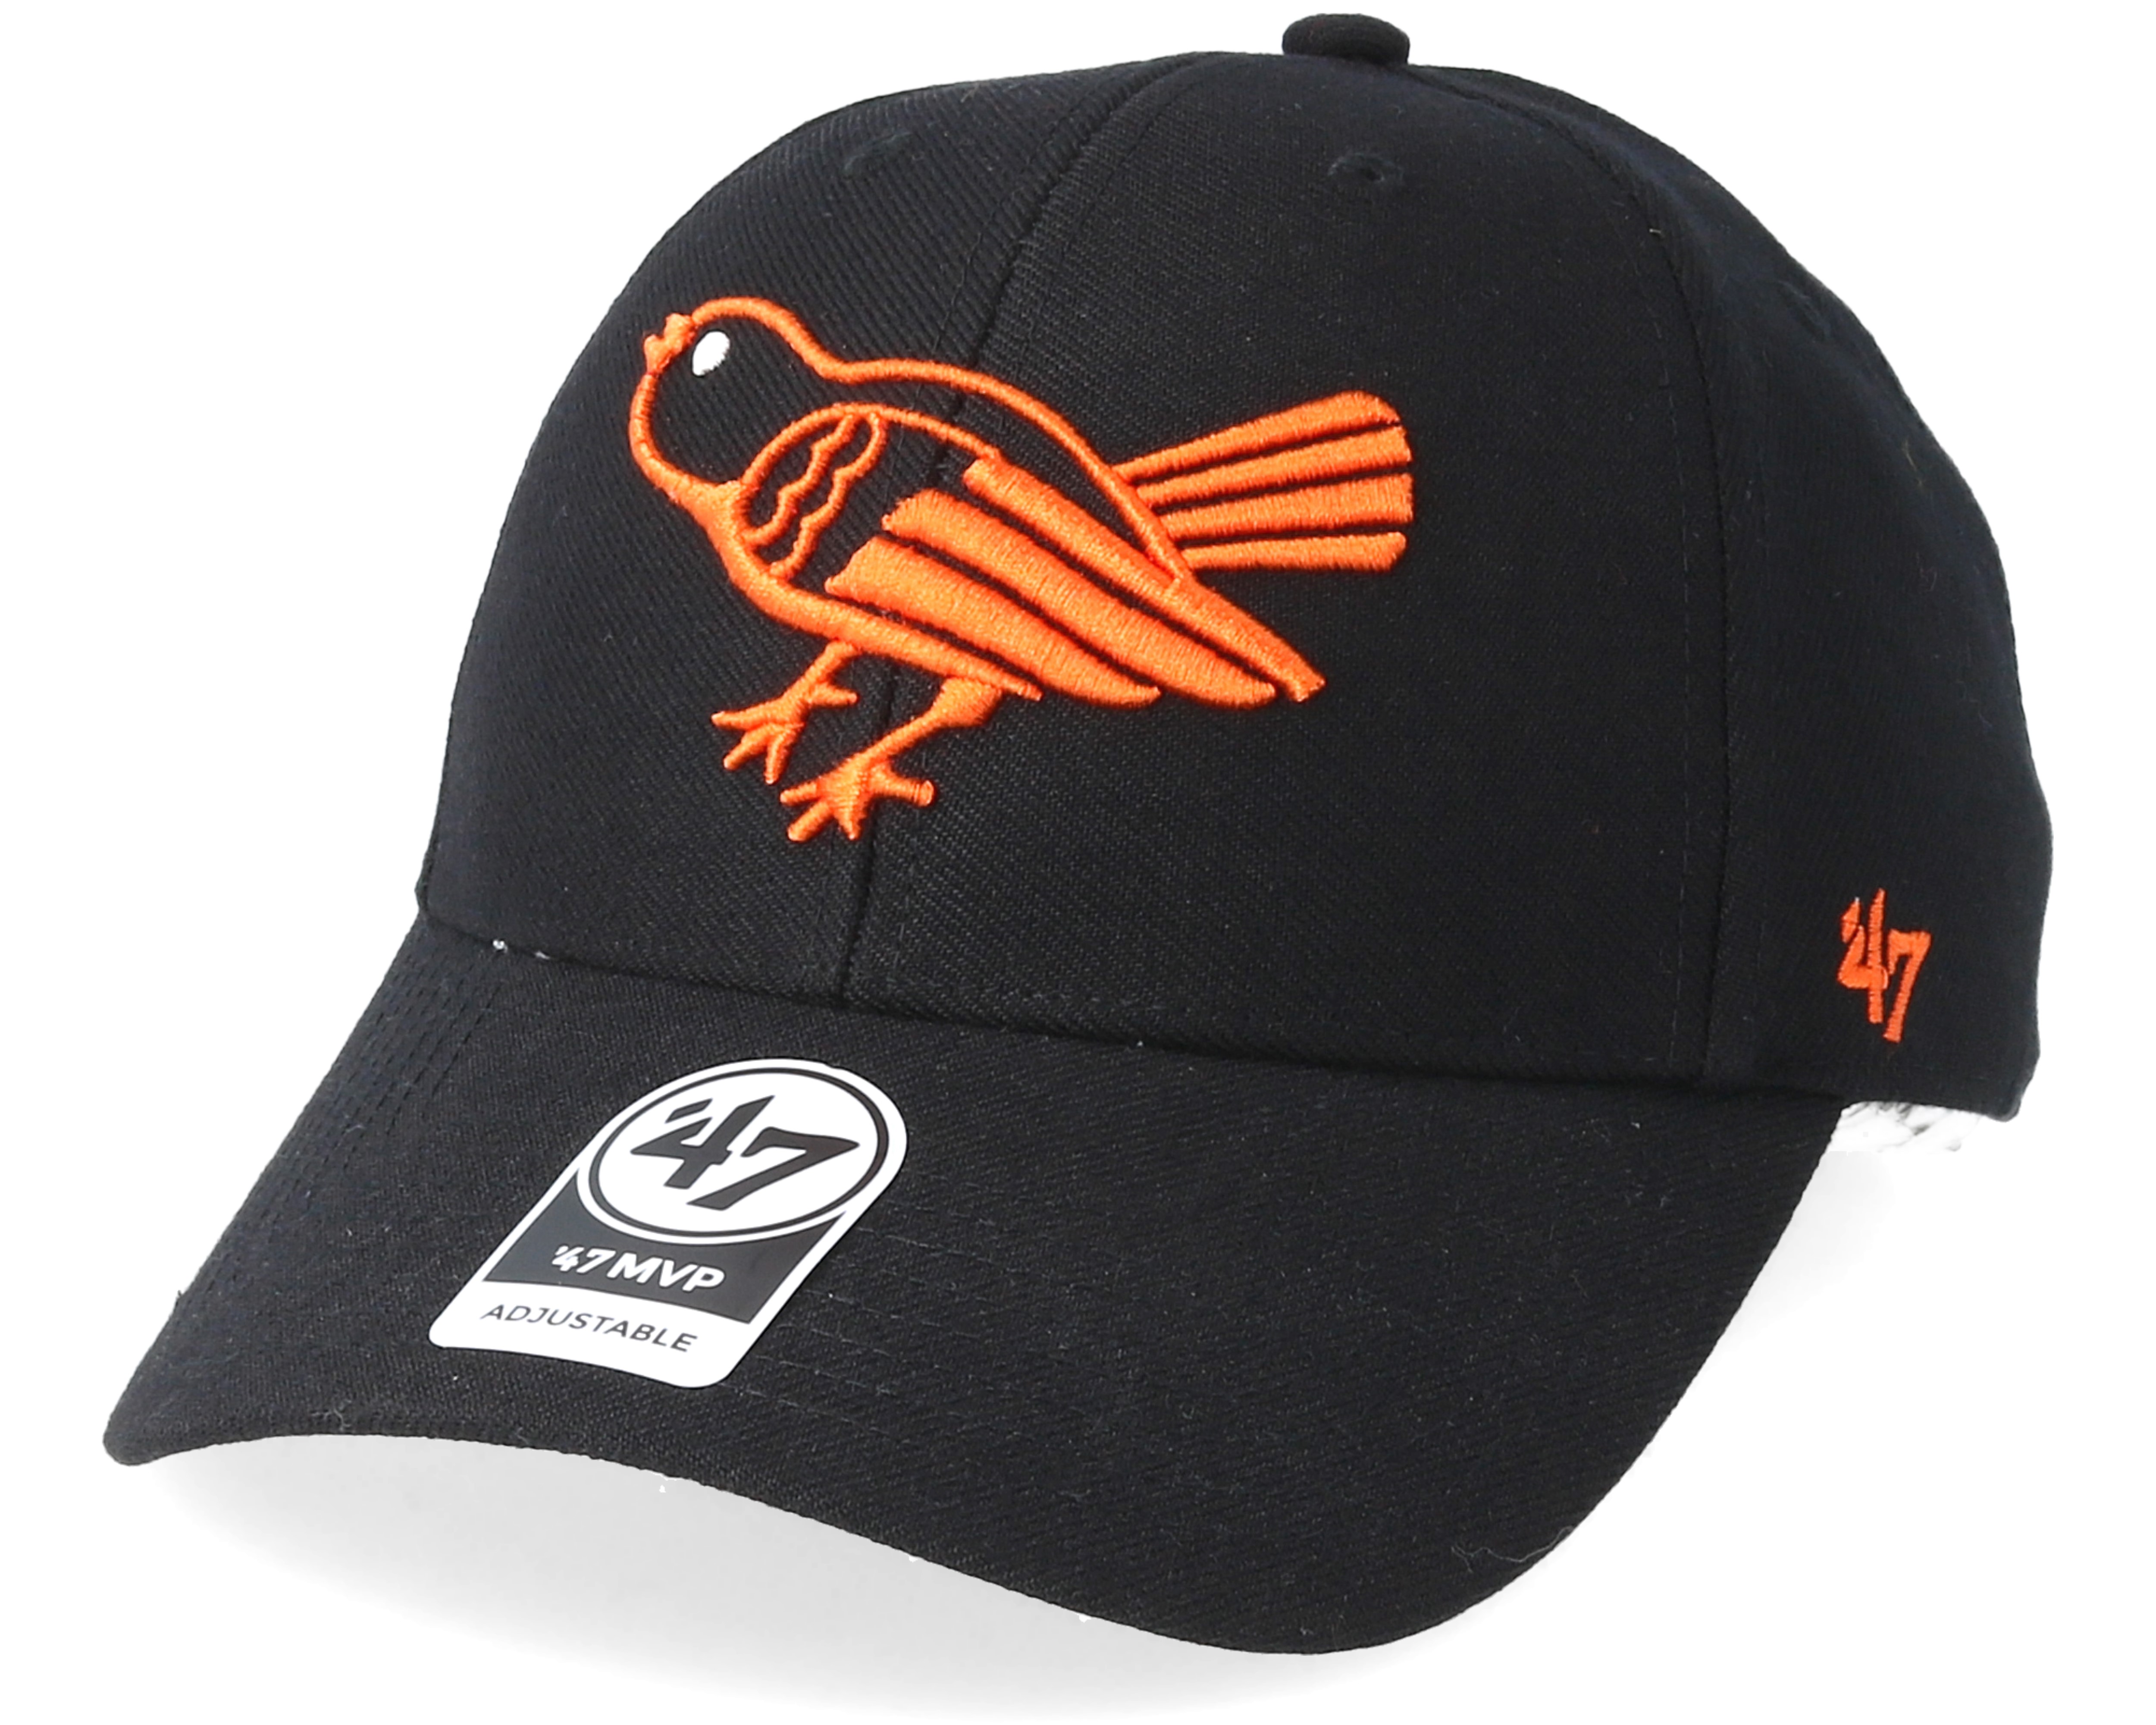 Baltimore Orioles Cooperstown Mvp Black Adjustable - 47 Brand caps